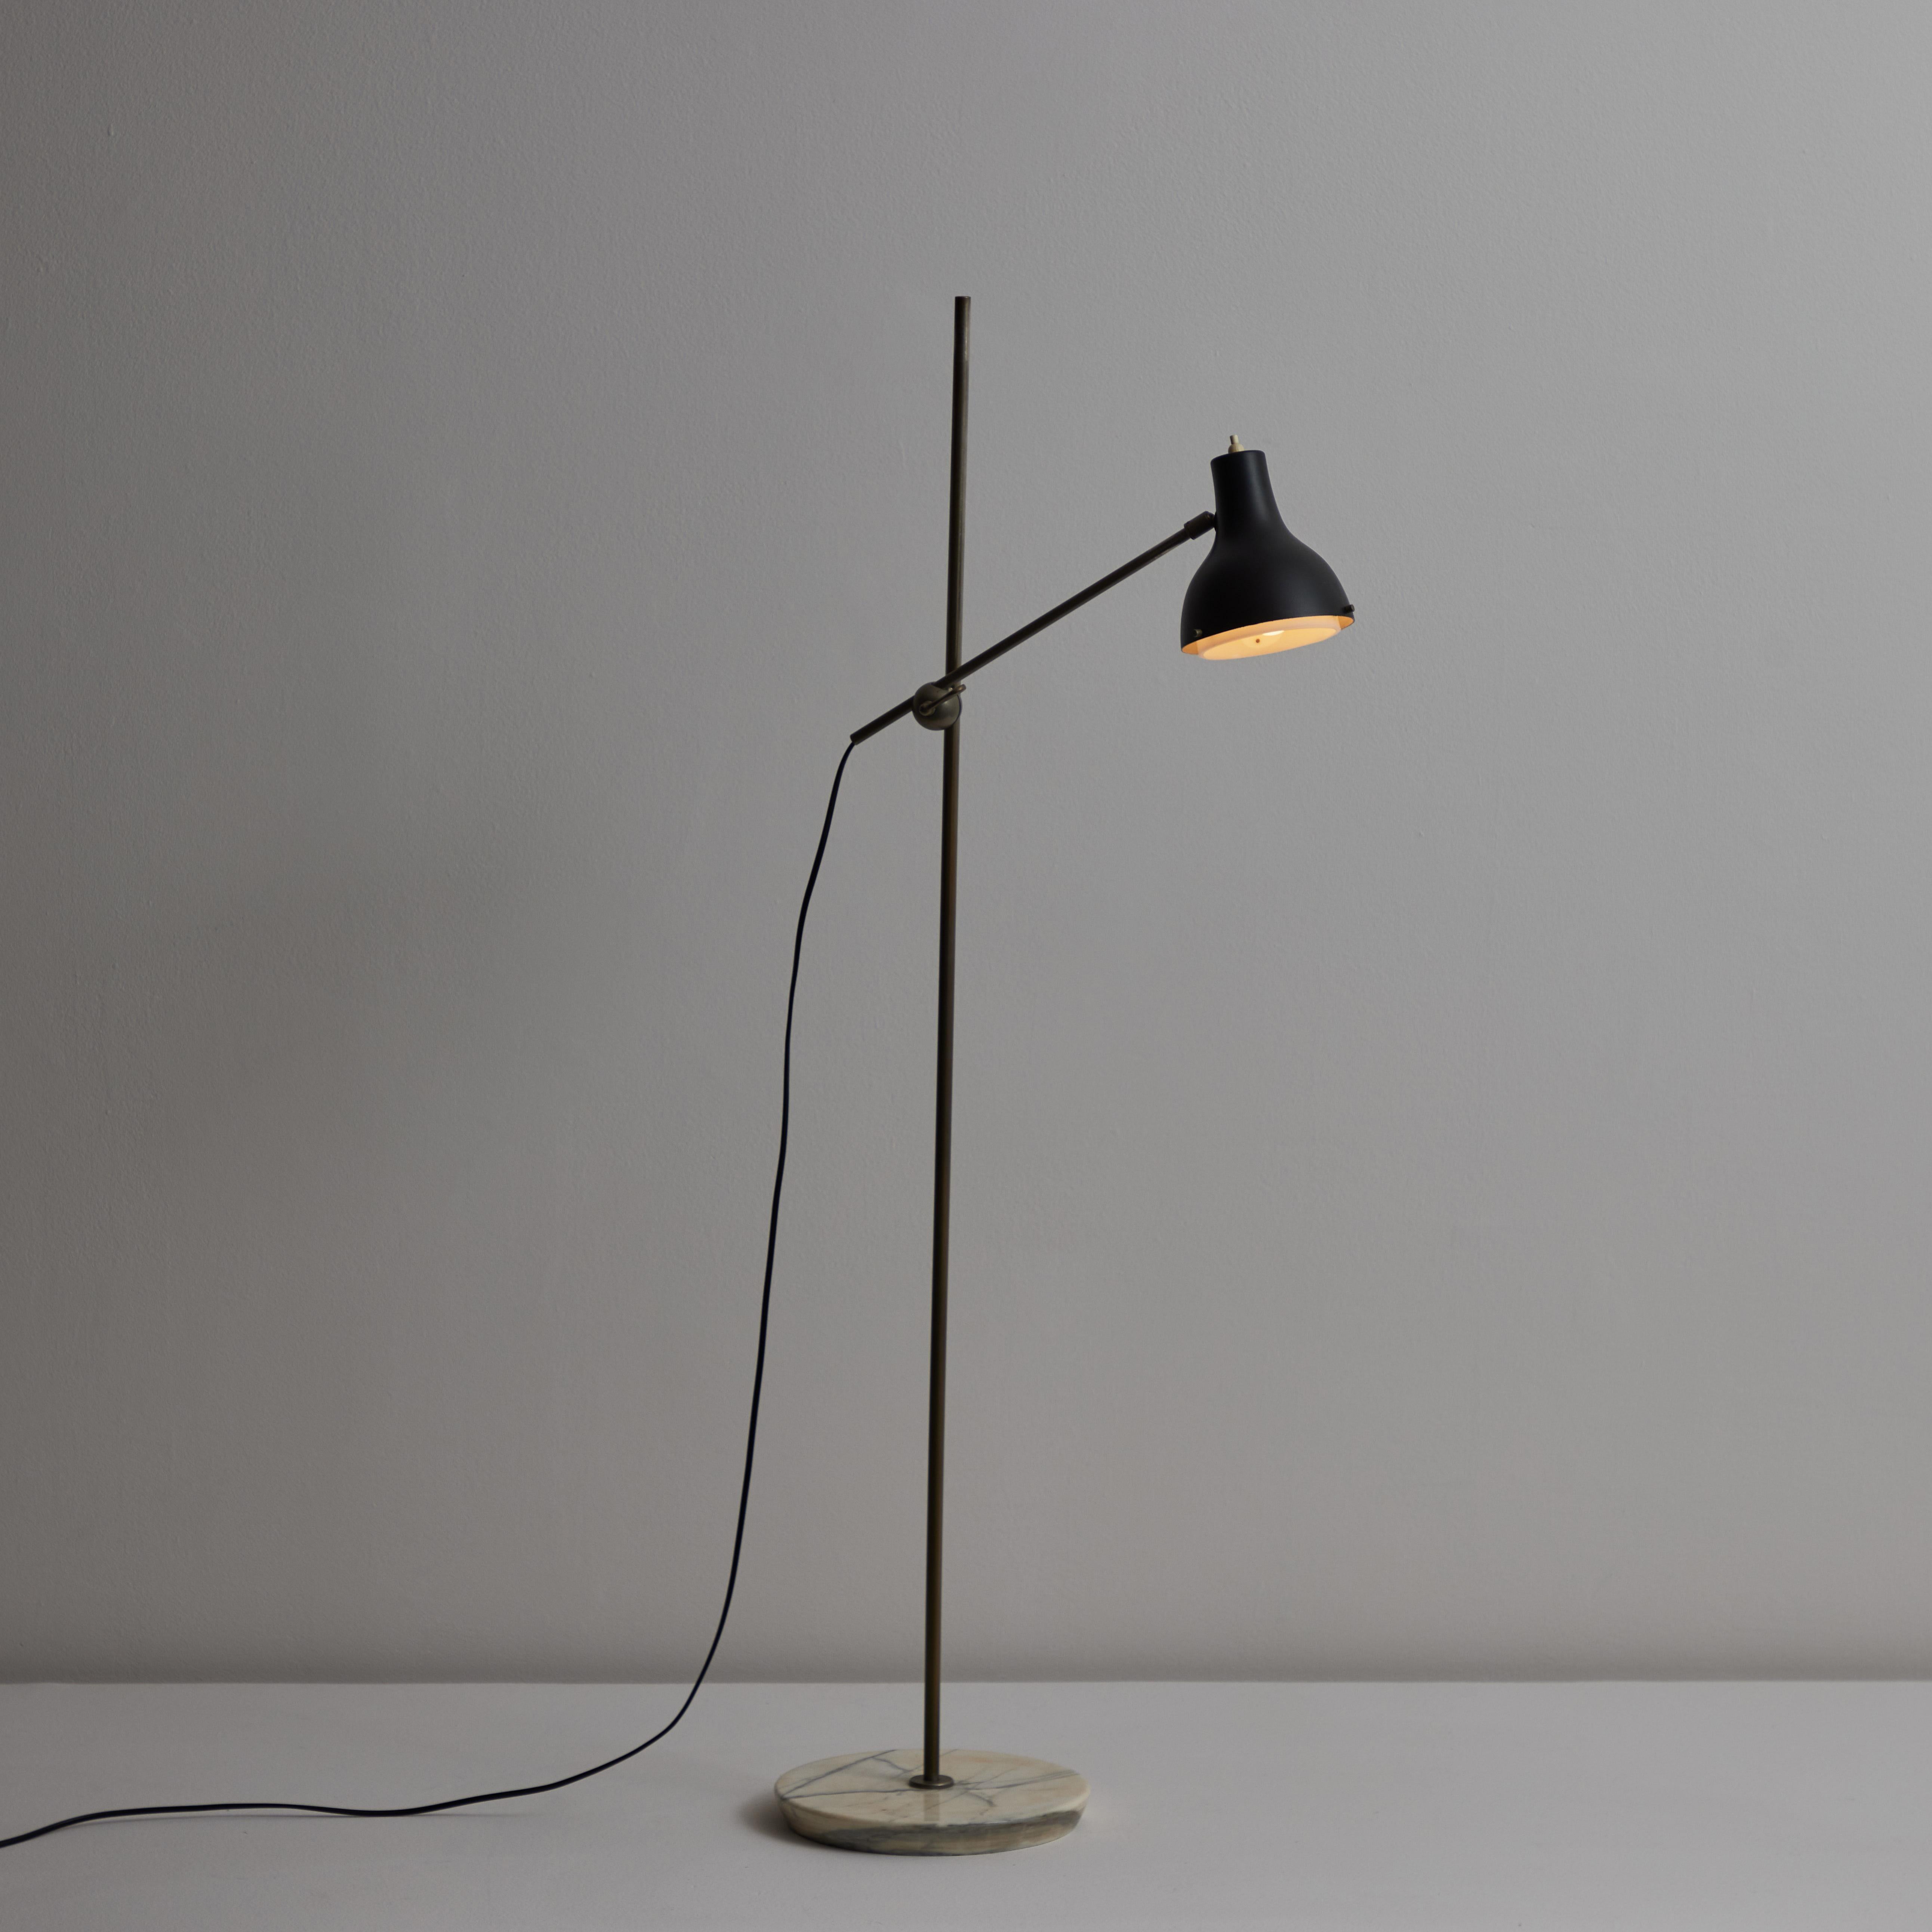 Italian Adjustable Floor Lamp by Stilux